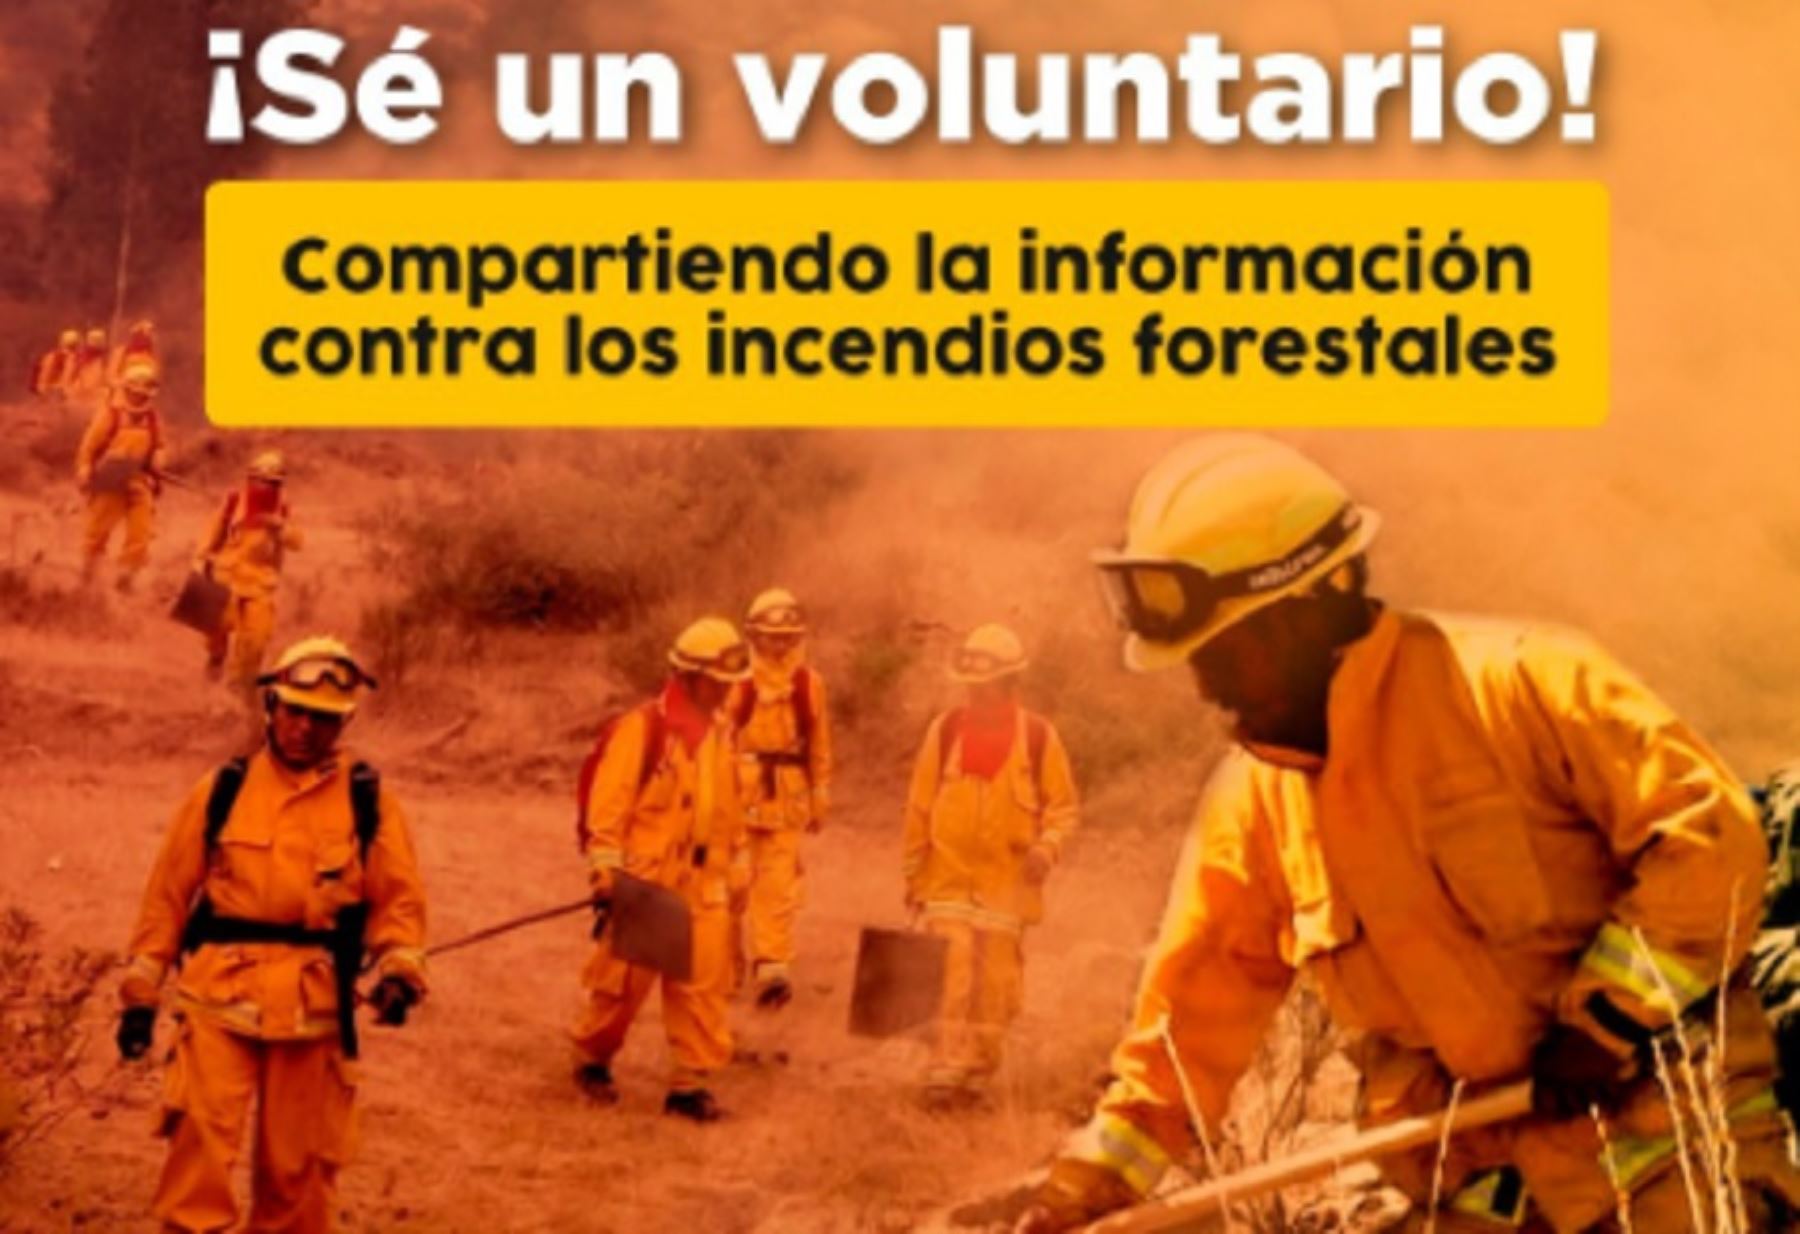 La iniciativa “Voluntarios de la naturaleza contra el fuego”, busca involucrar activamente a las personas en una estrategia de difusión de las acciones preventivas ante este tipo de emergencias.